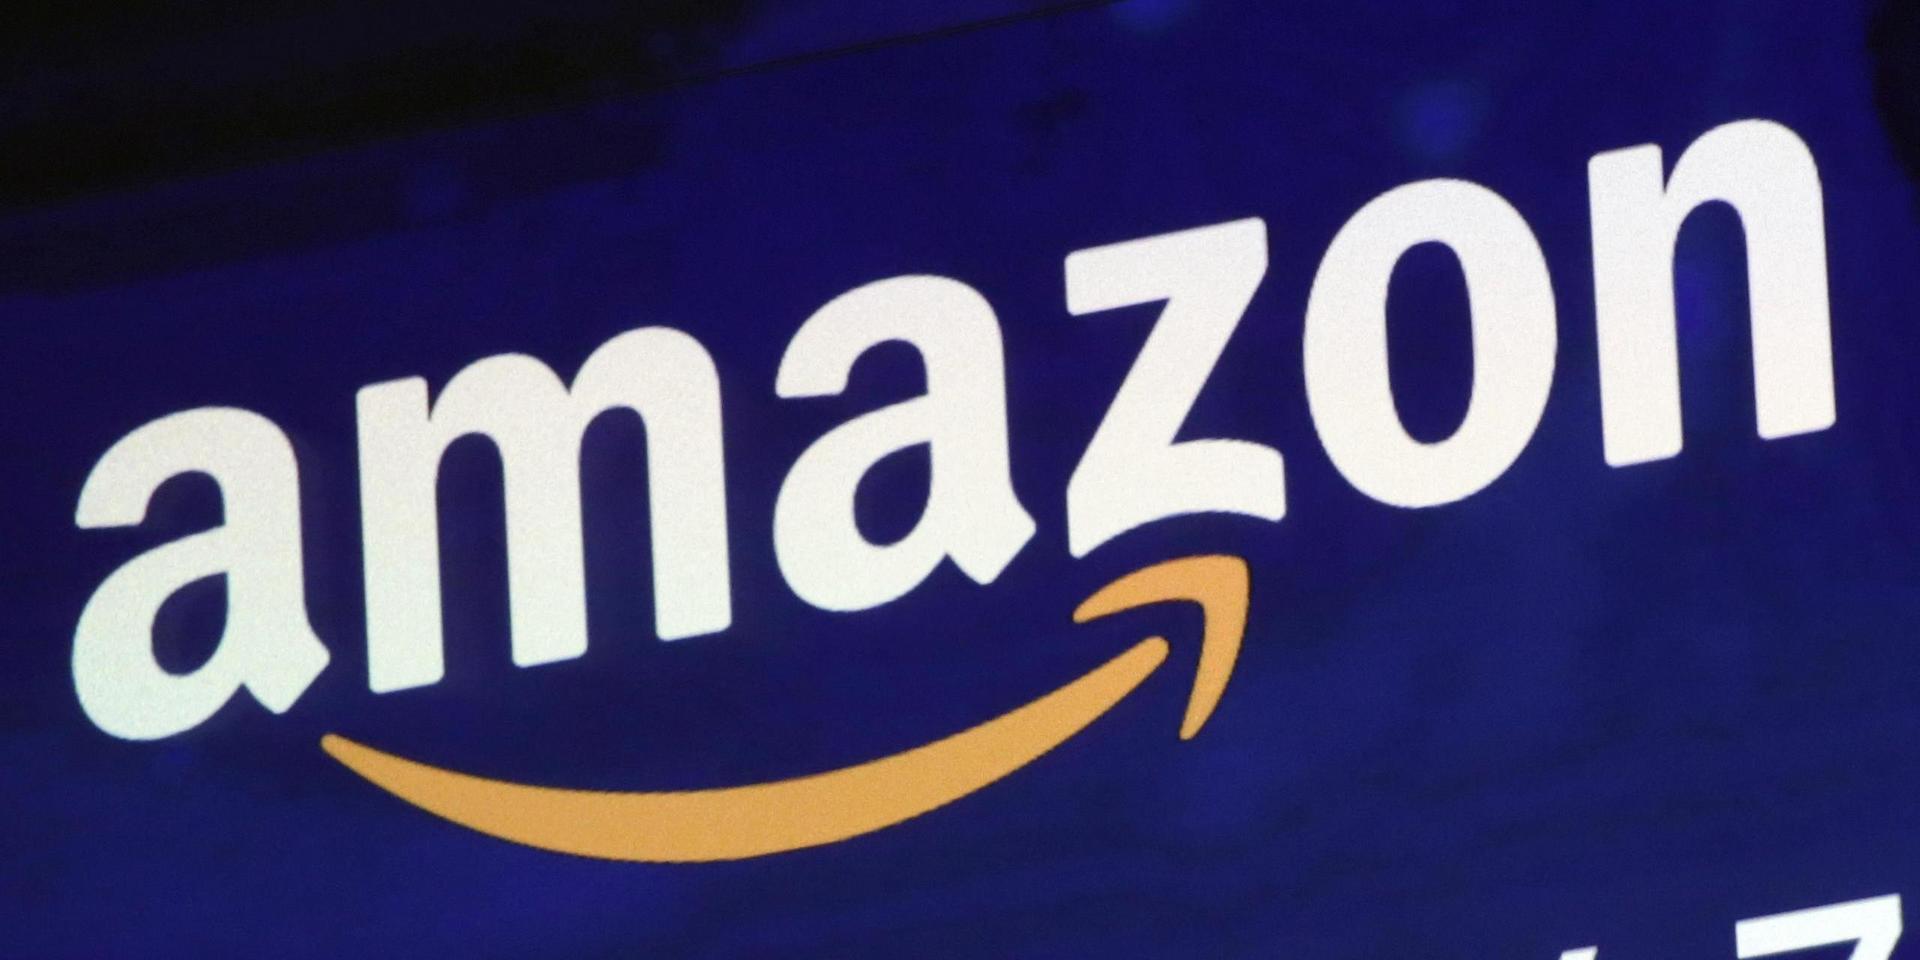 E-handelsjätten Amazon har ökat kraftigt i värde under coronakrisen. 